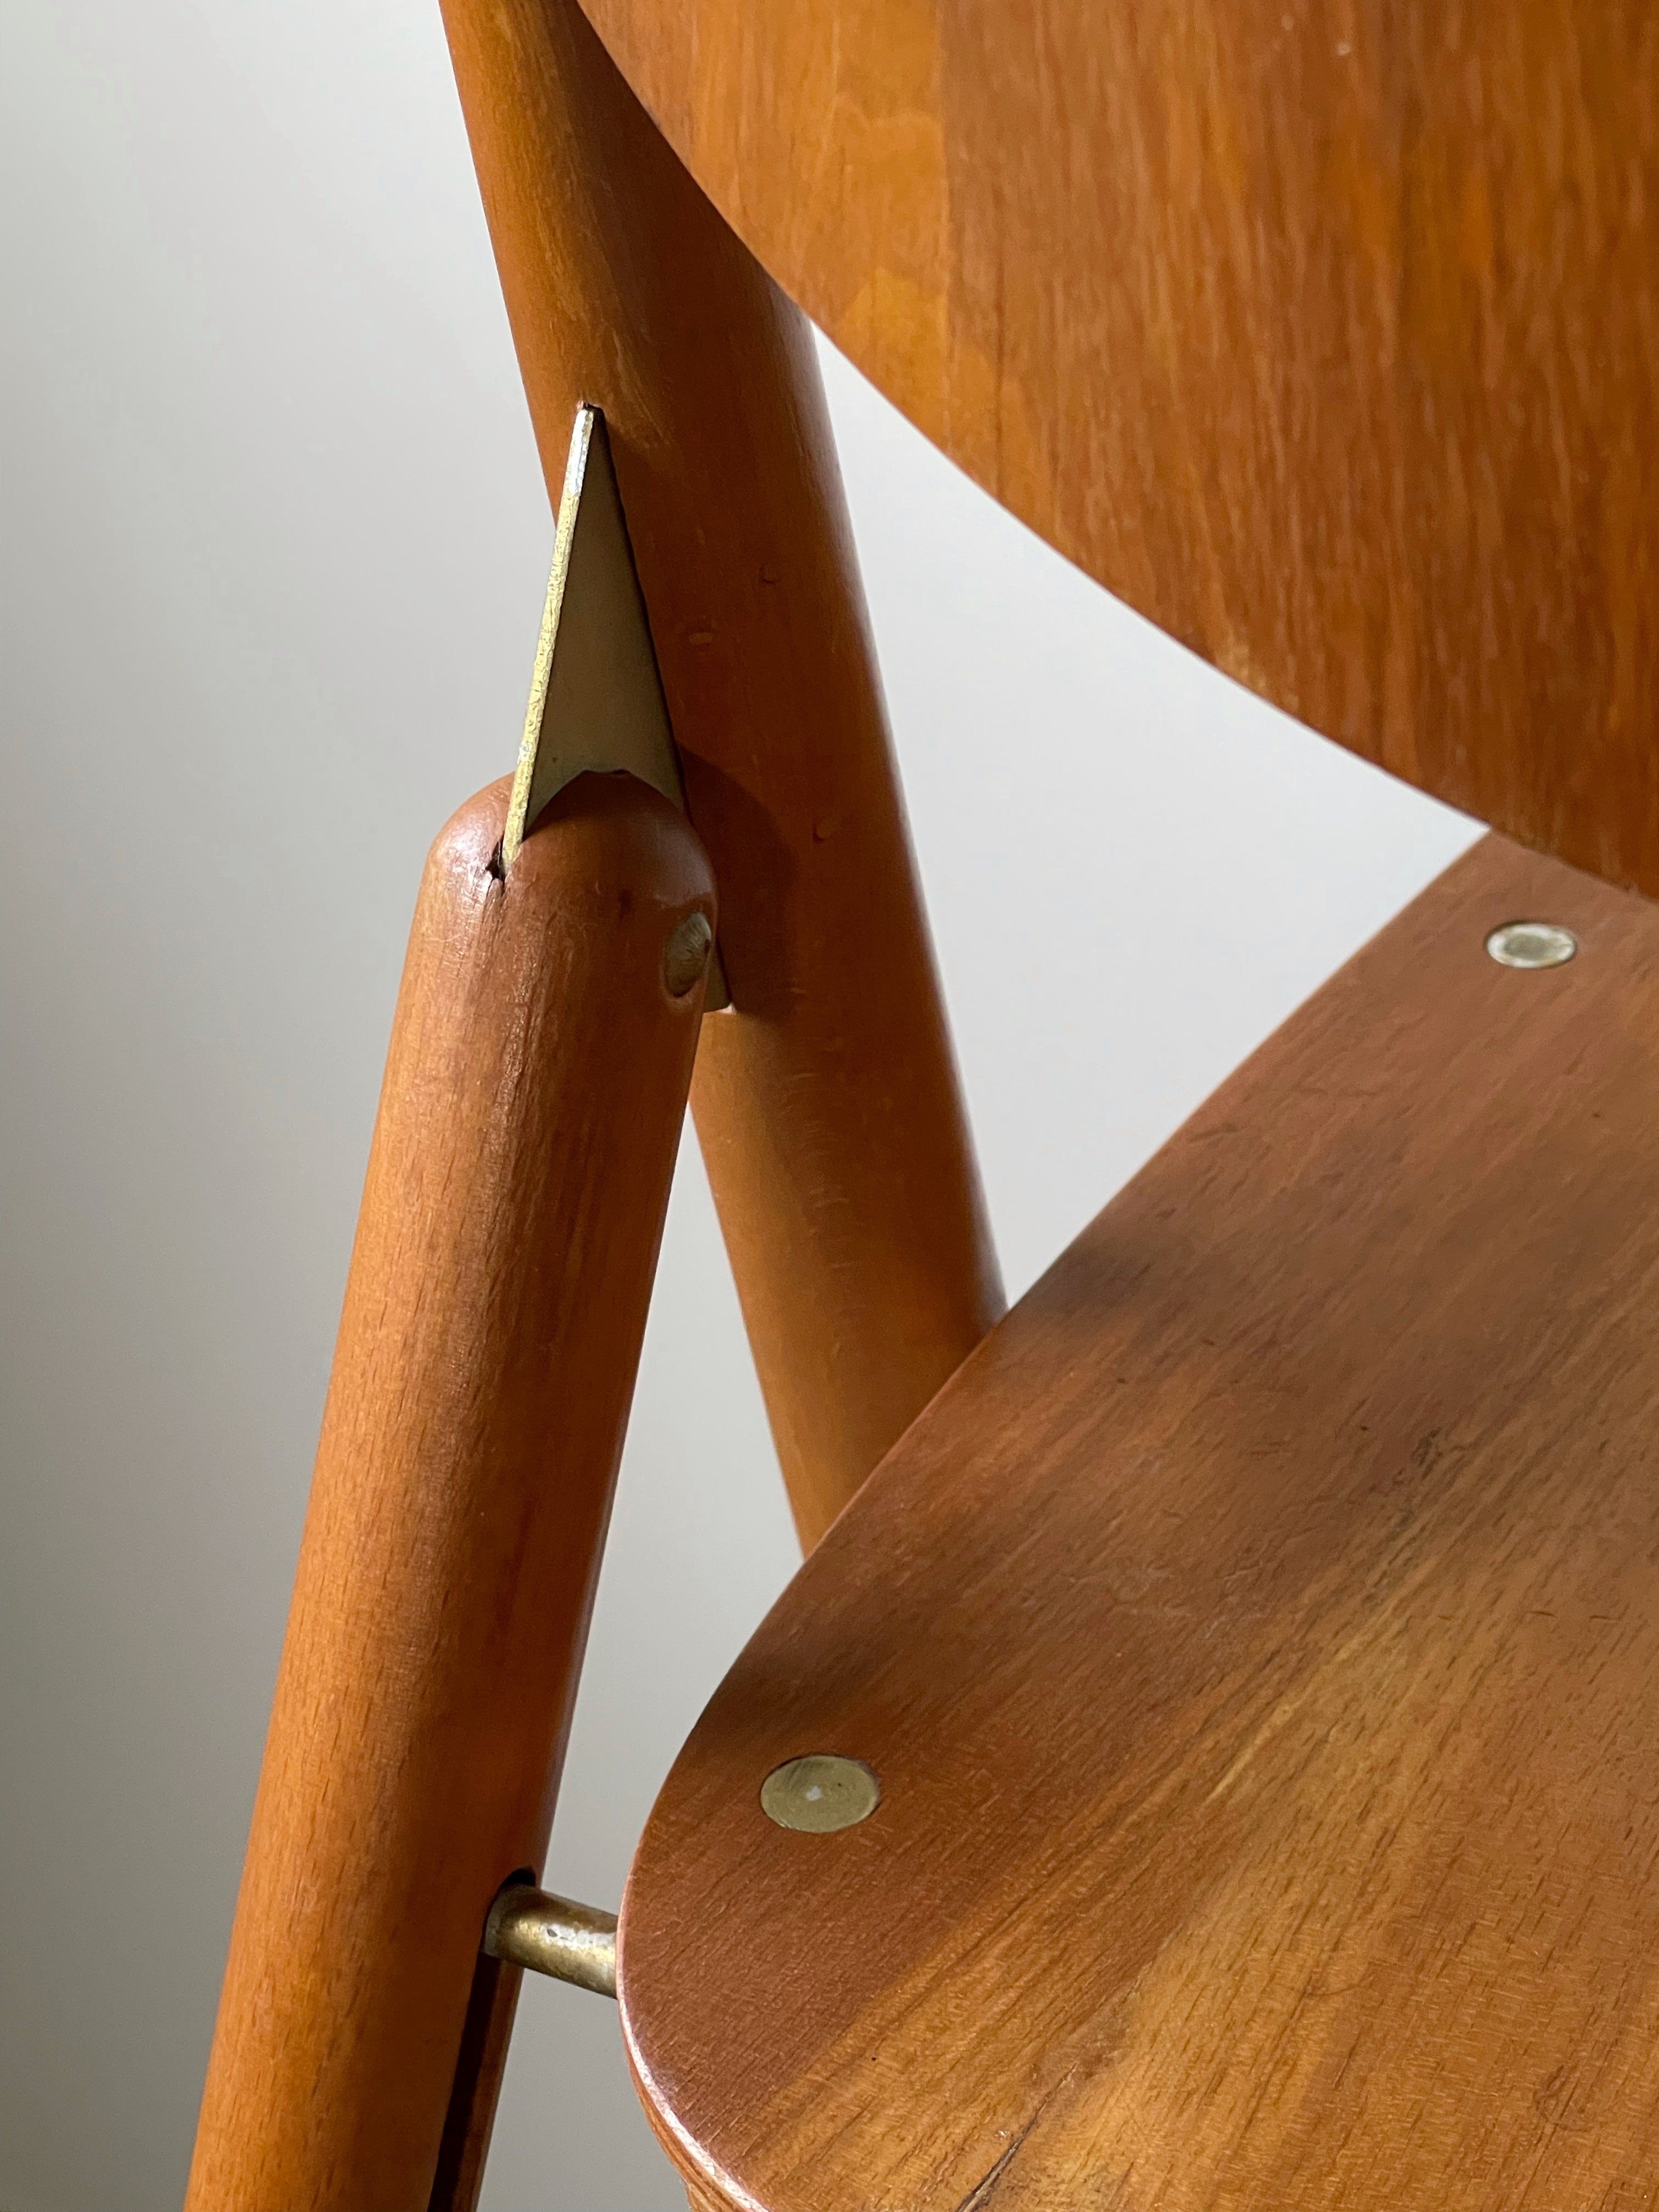 SE18 Chair by Egon Eiermann